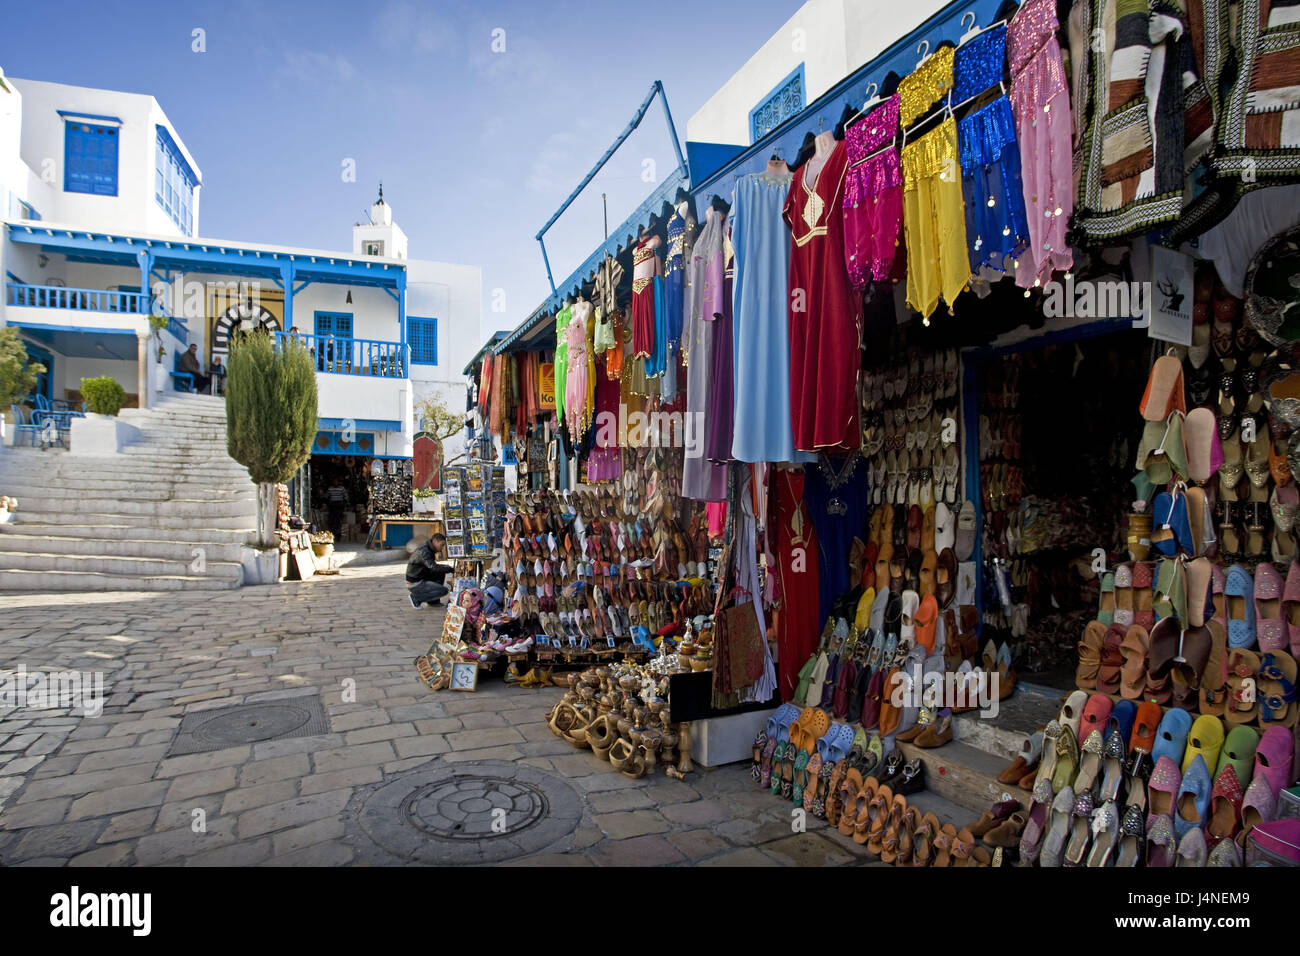 La Tunisie, Sidi Bou Saïd, du marché, des boutiques, des biens, de couleurs vives, l'Afrique du Nord, place de l'artiste, village, lieu touristique, la destination, le lieu d'intérêts, du tourisme, de souvenirs, du commerce, de la vente, l'entreprise, traditionnellement, en général, beaucoup de couleurs, vêtements, chaussures, à l'extérieur, personne, Banque D'Images